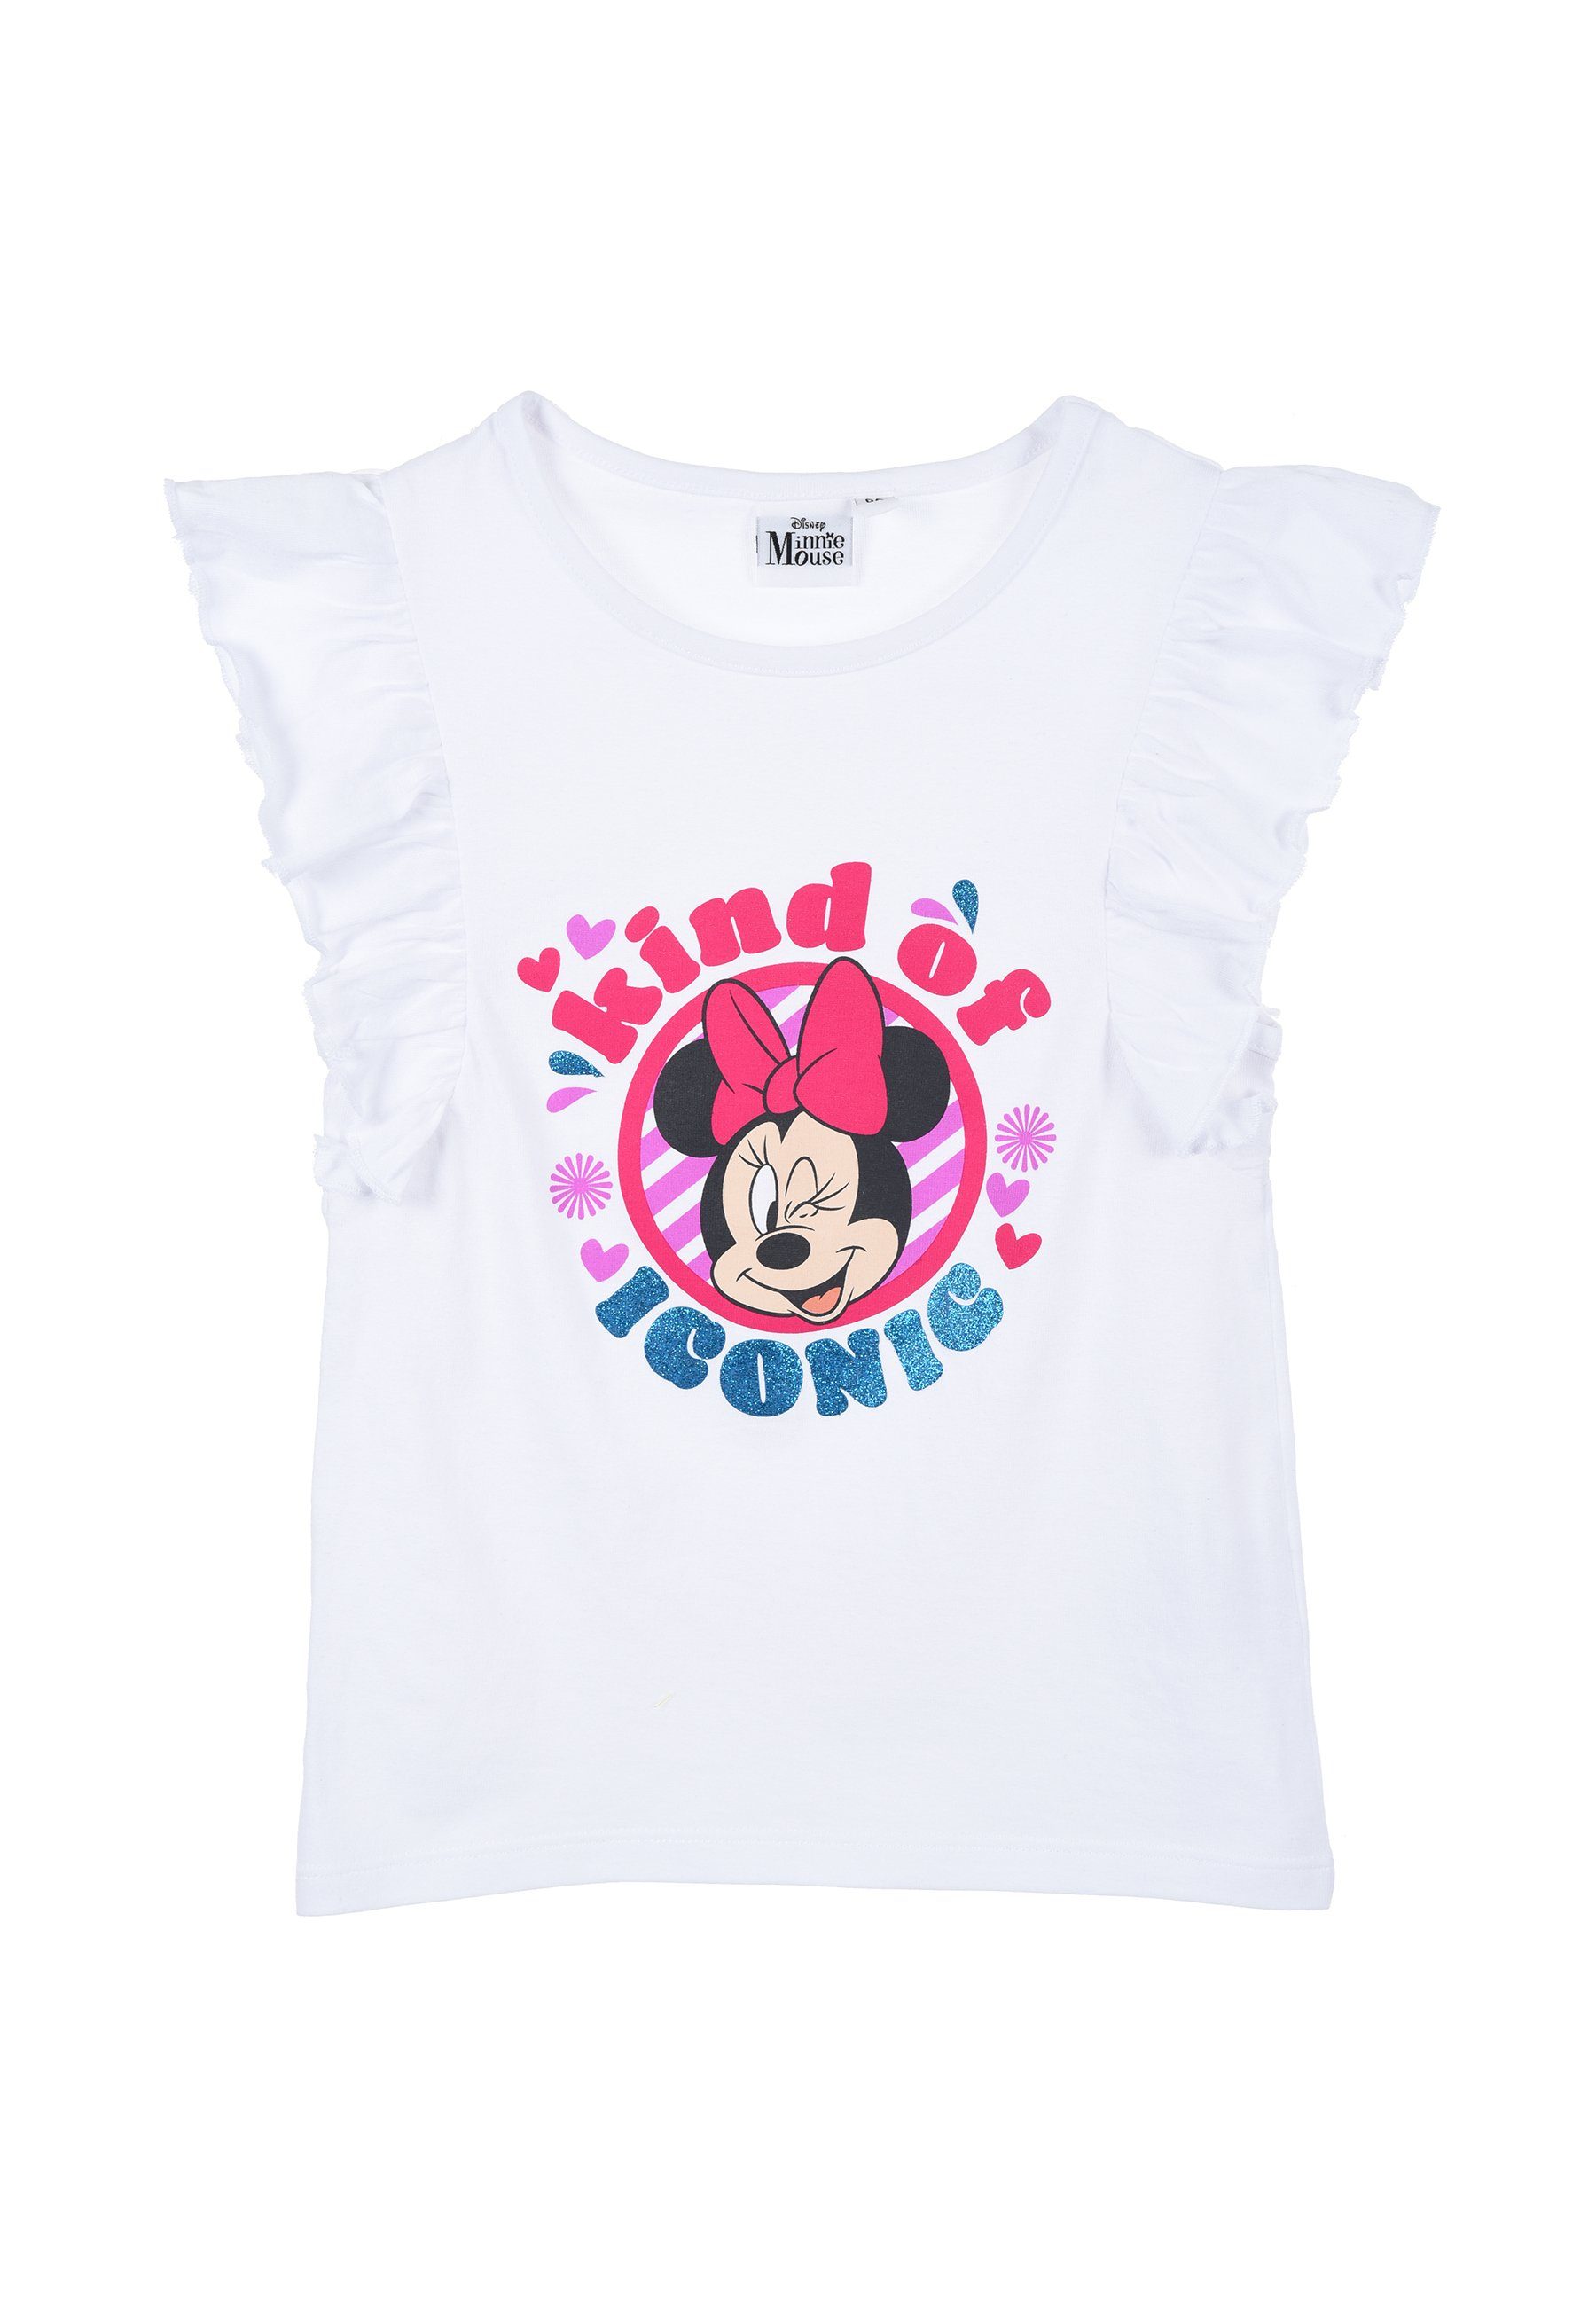 kurzarm Oberteil Weiß T-Shirt Sommer Mouse Mädchen T-Shirt Kinder Disney Minnie Shirt